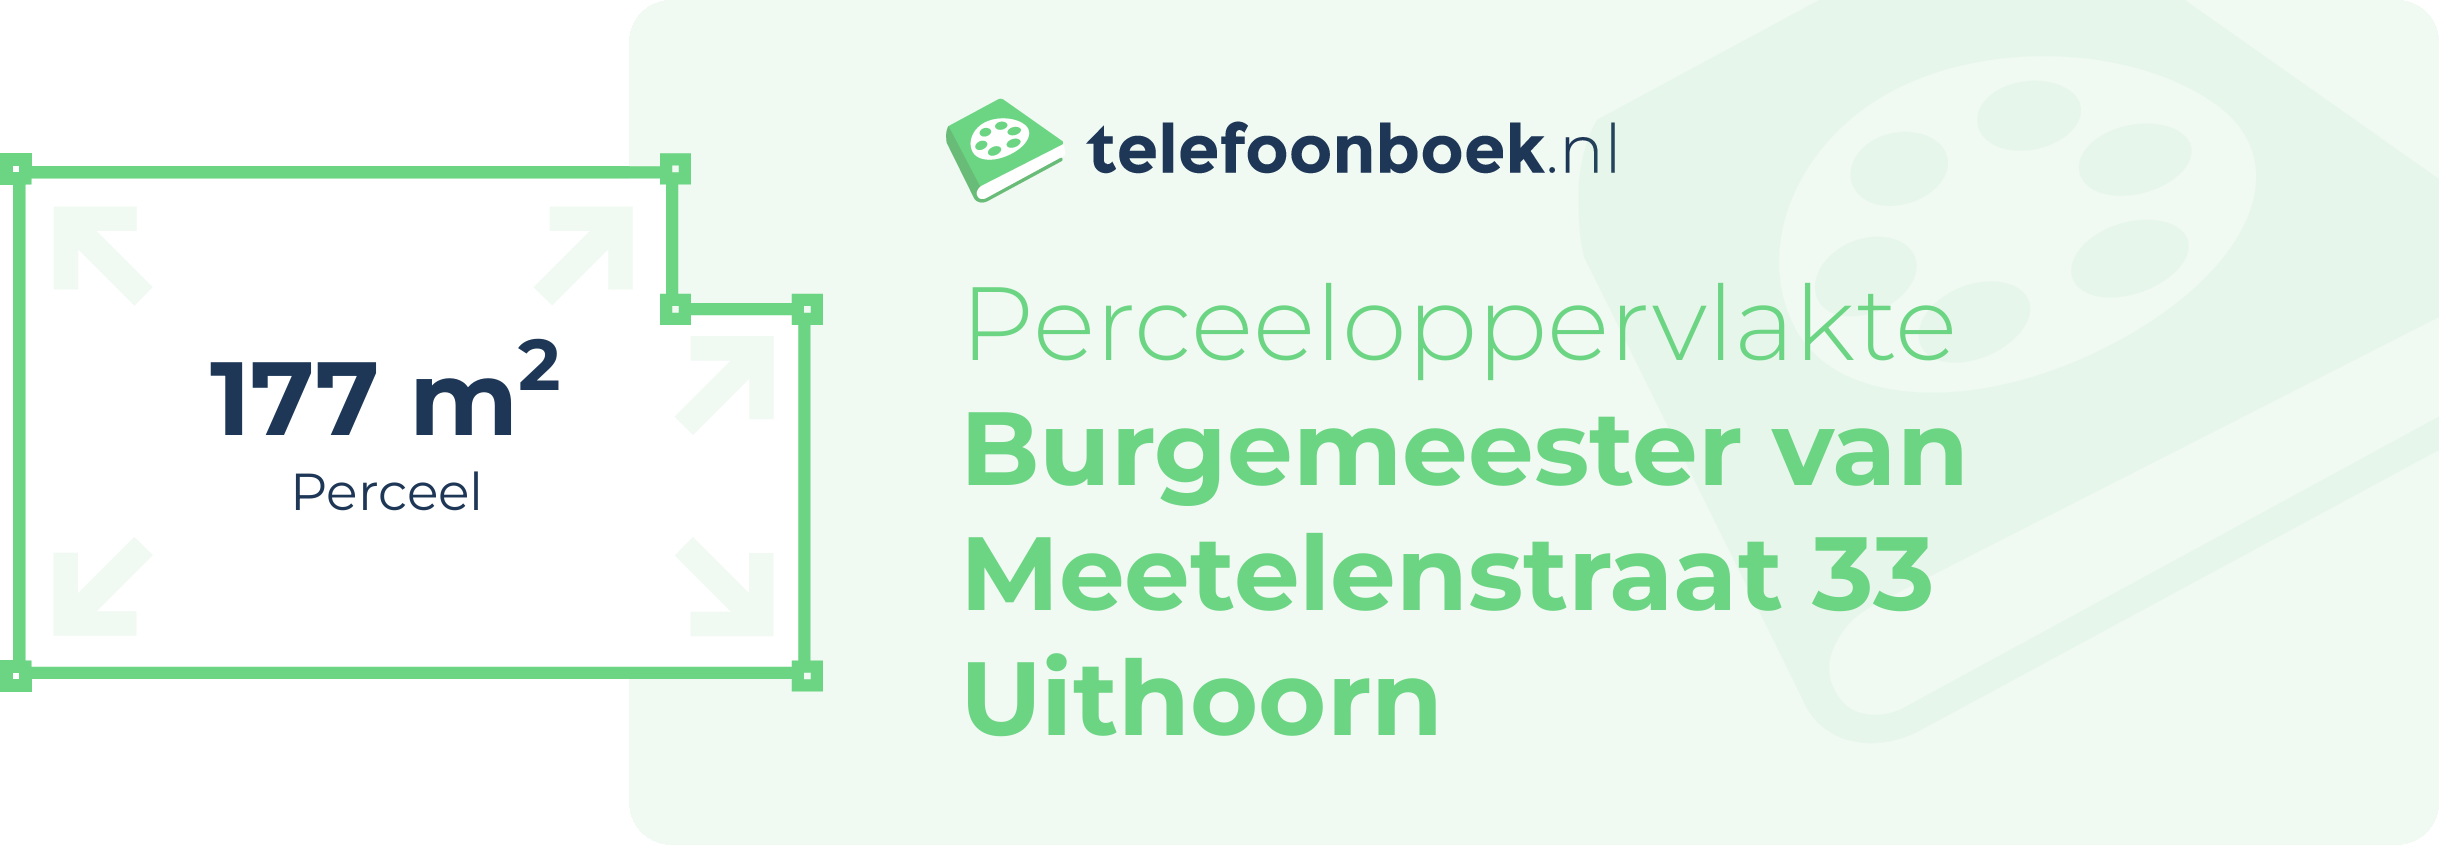 Perceeloppervlakte Burgemeester Van Meetelenstraat 33 Uithoorn